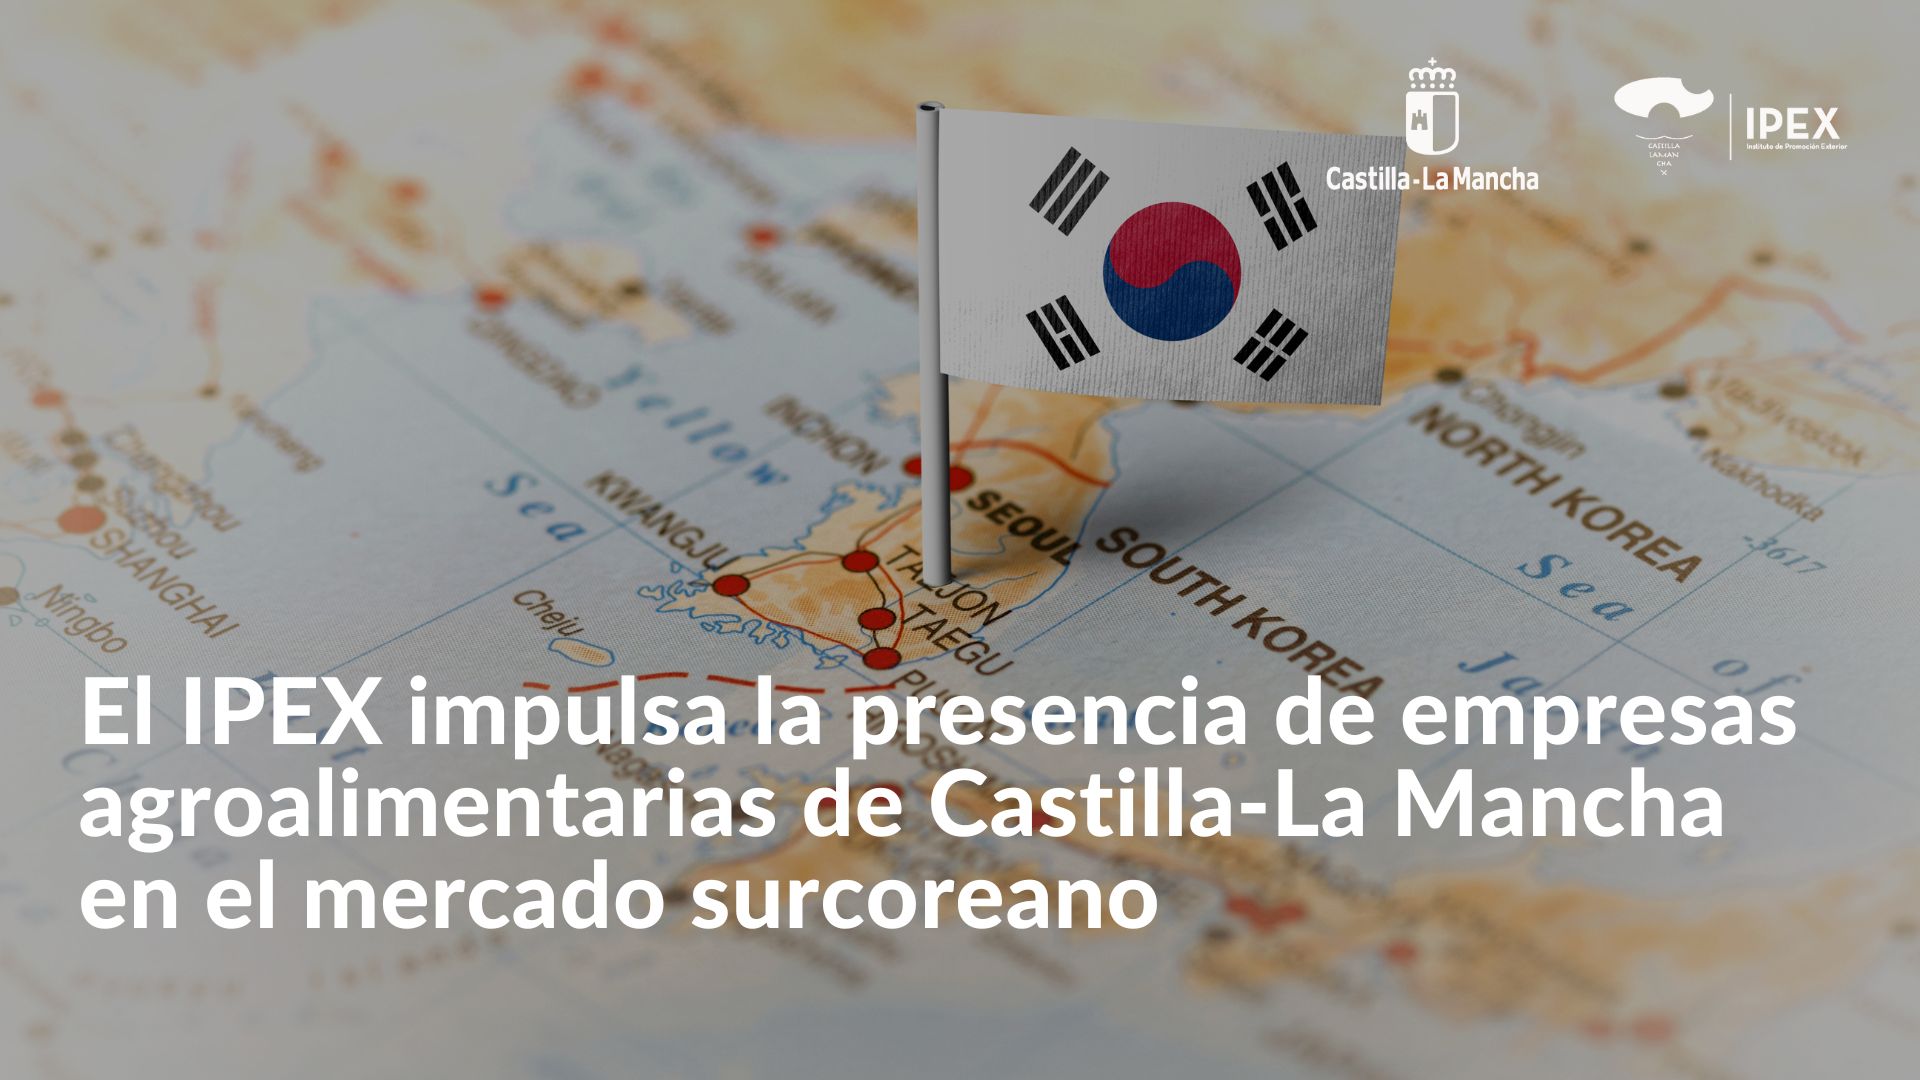 El IPEX impulsa la presencia de empresas agroalimentarias de Castilla-La Mancha en el mercado surcoreano